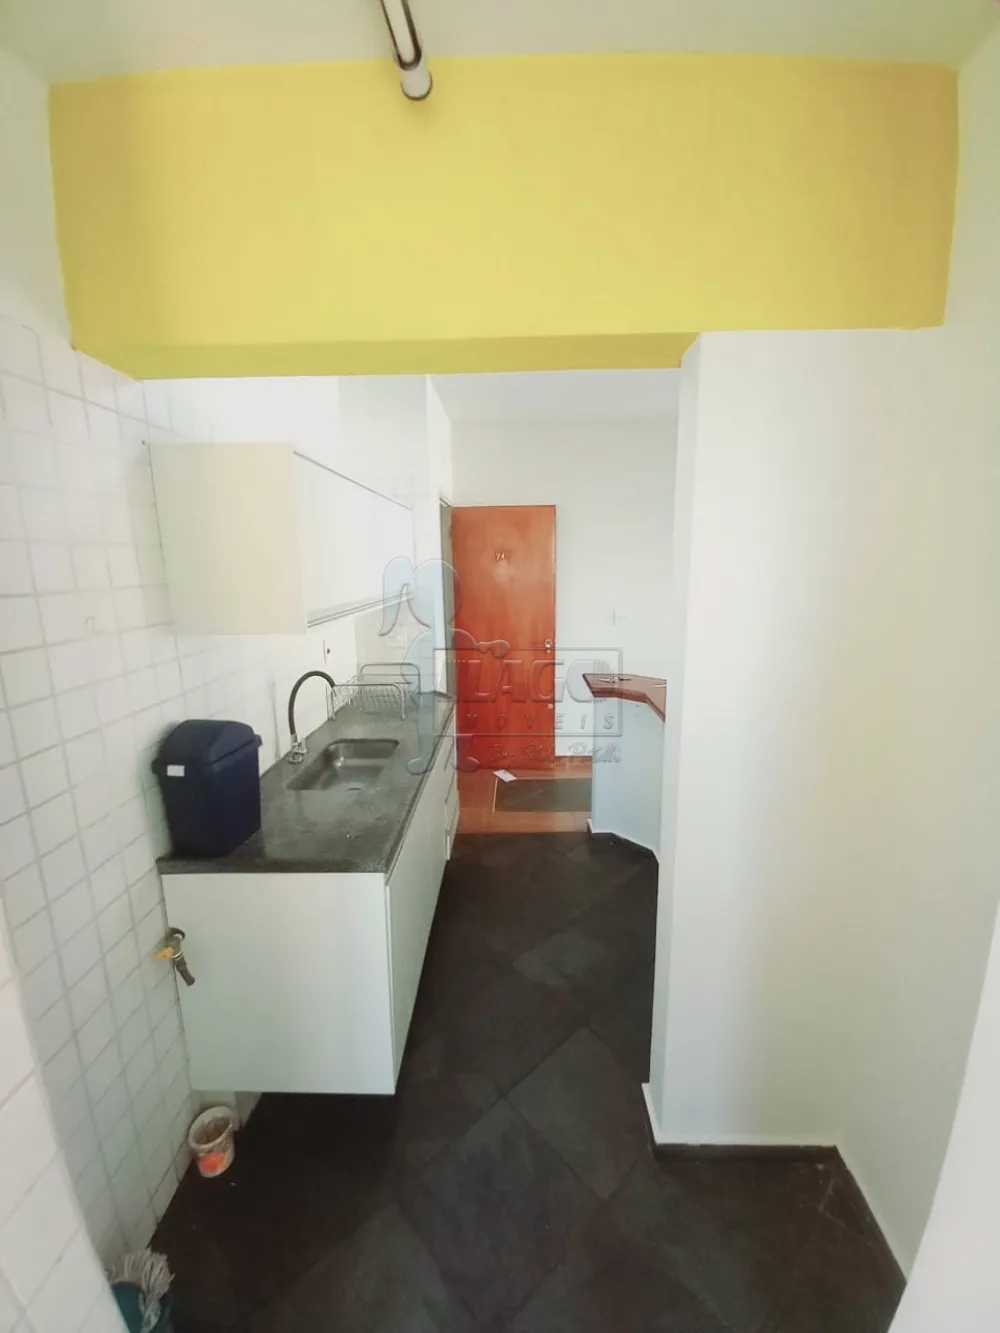 Alugar Apartamentos / Padrão em Ribeirão Preto R$ 1.200,00 - Foto 6